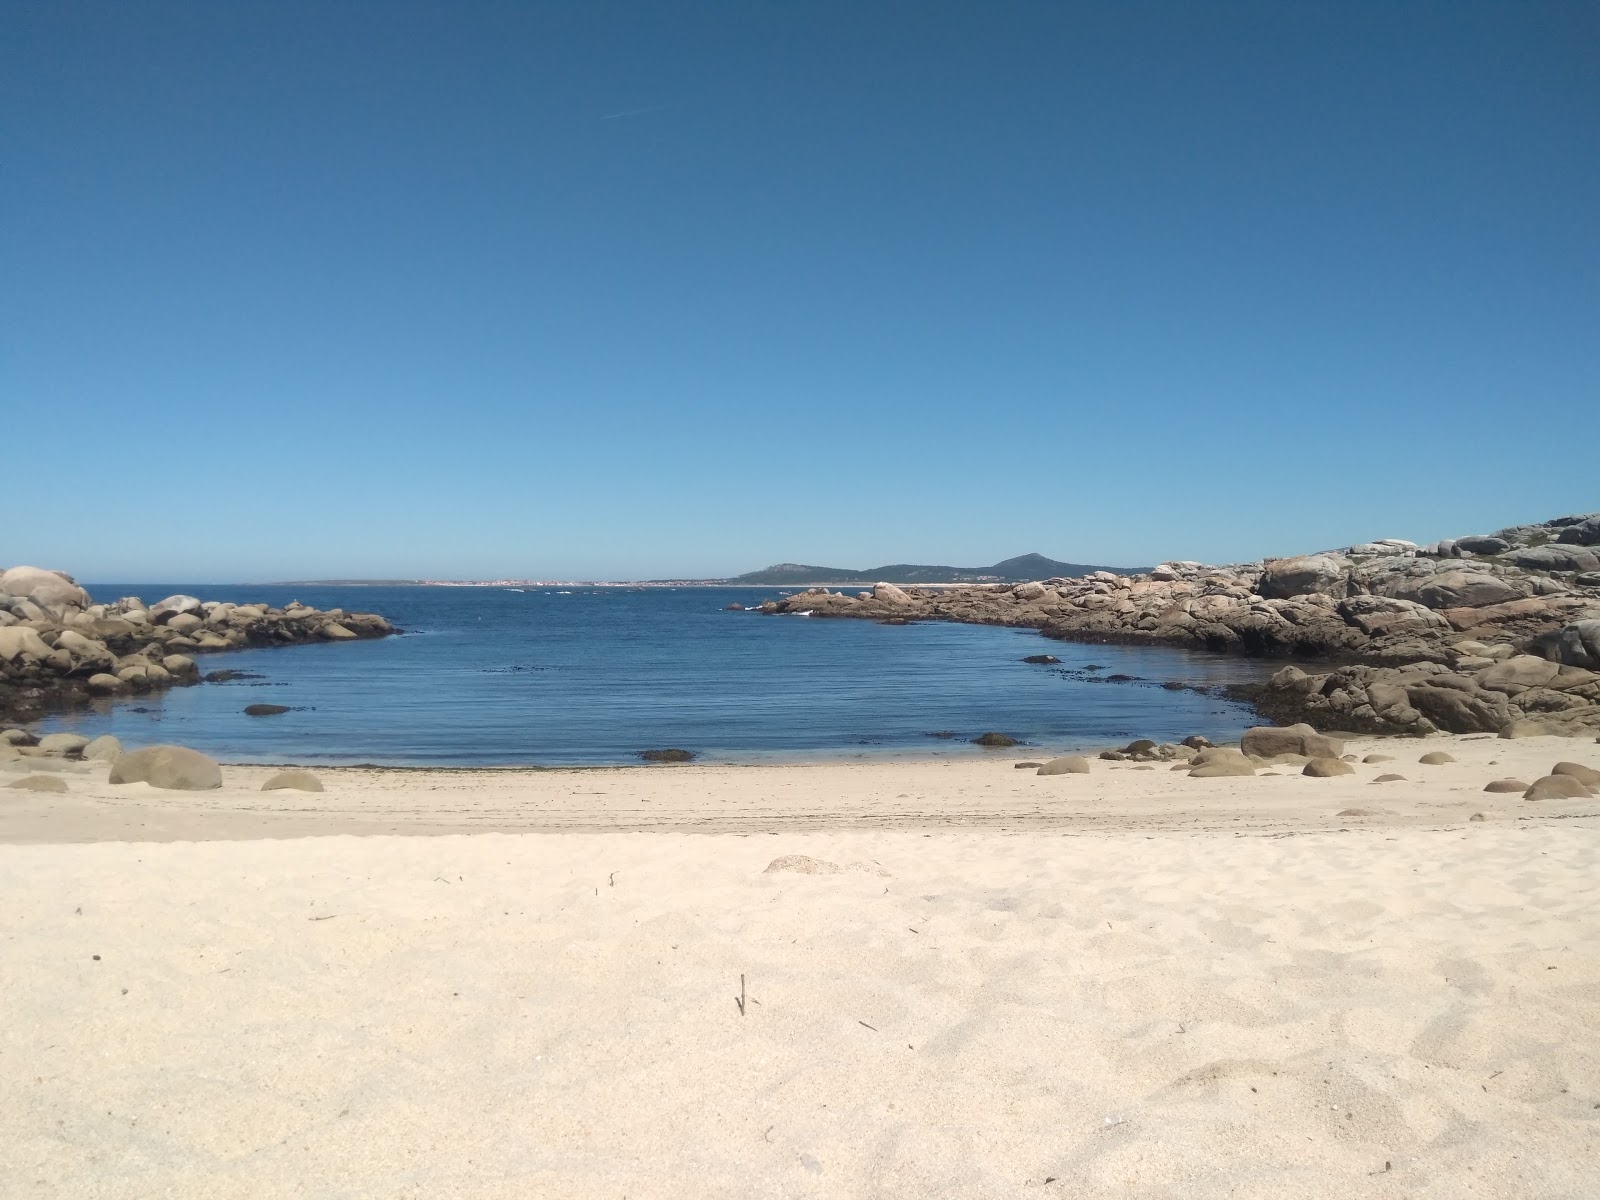 Fotografie cu Area Basta beach cu o suprafață de nisip alb